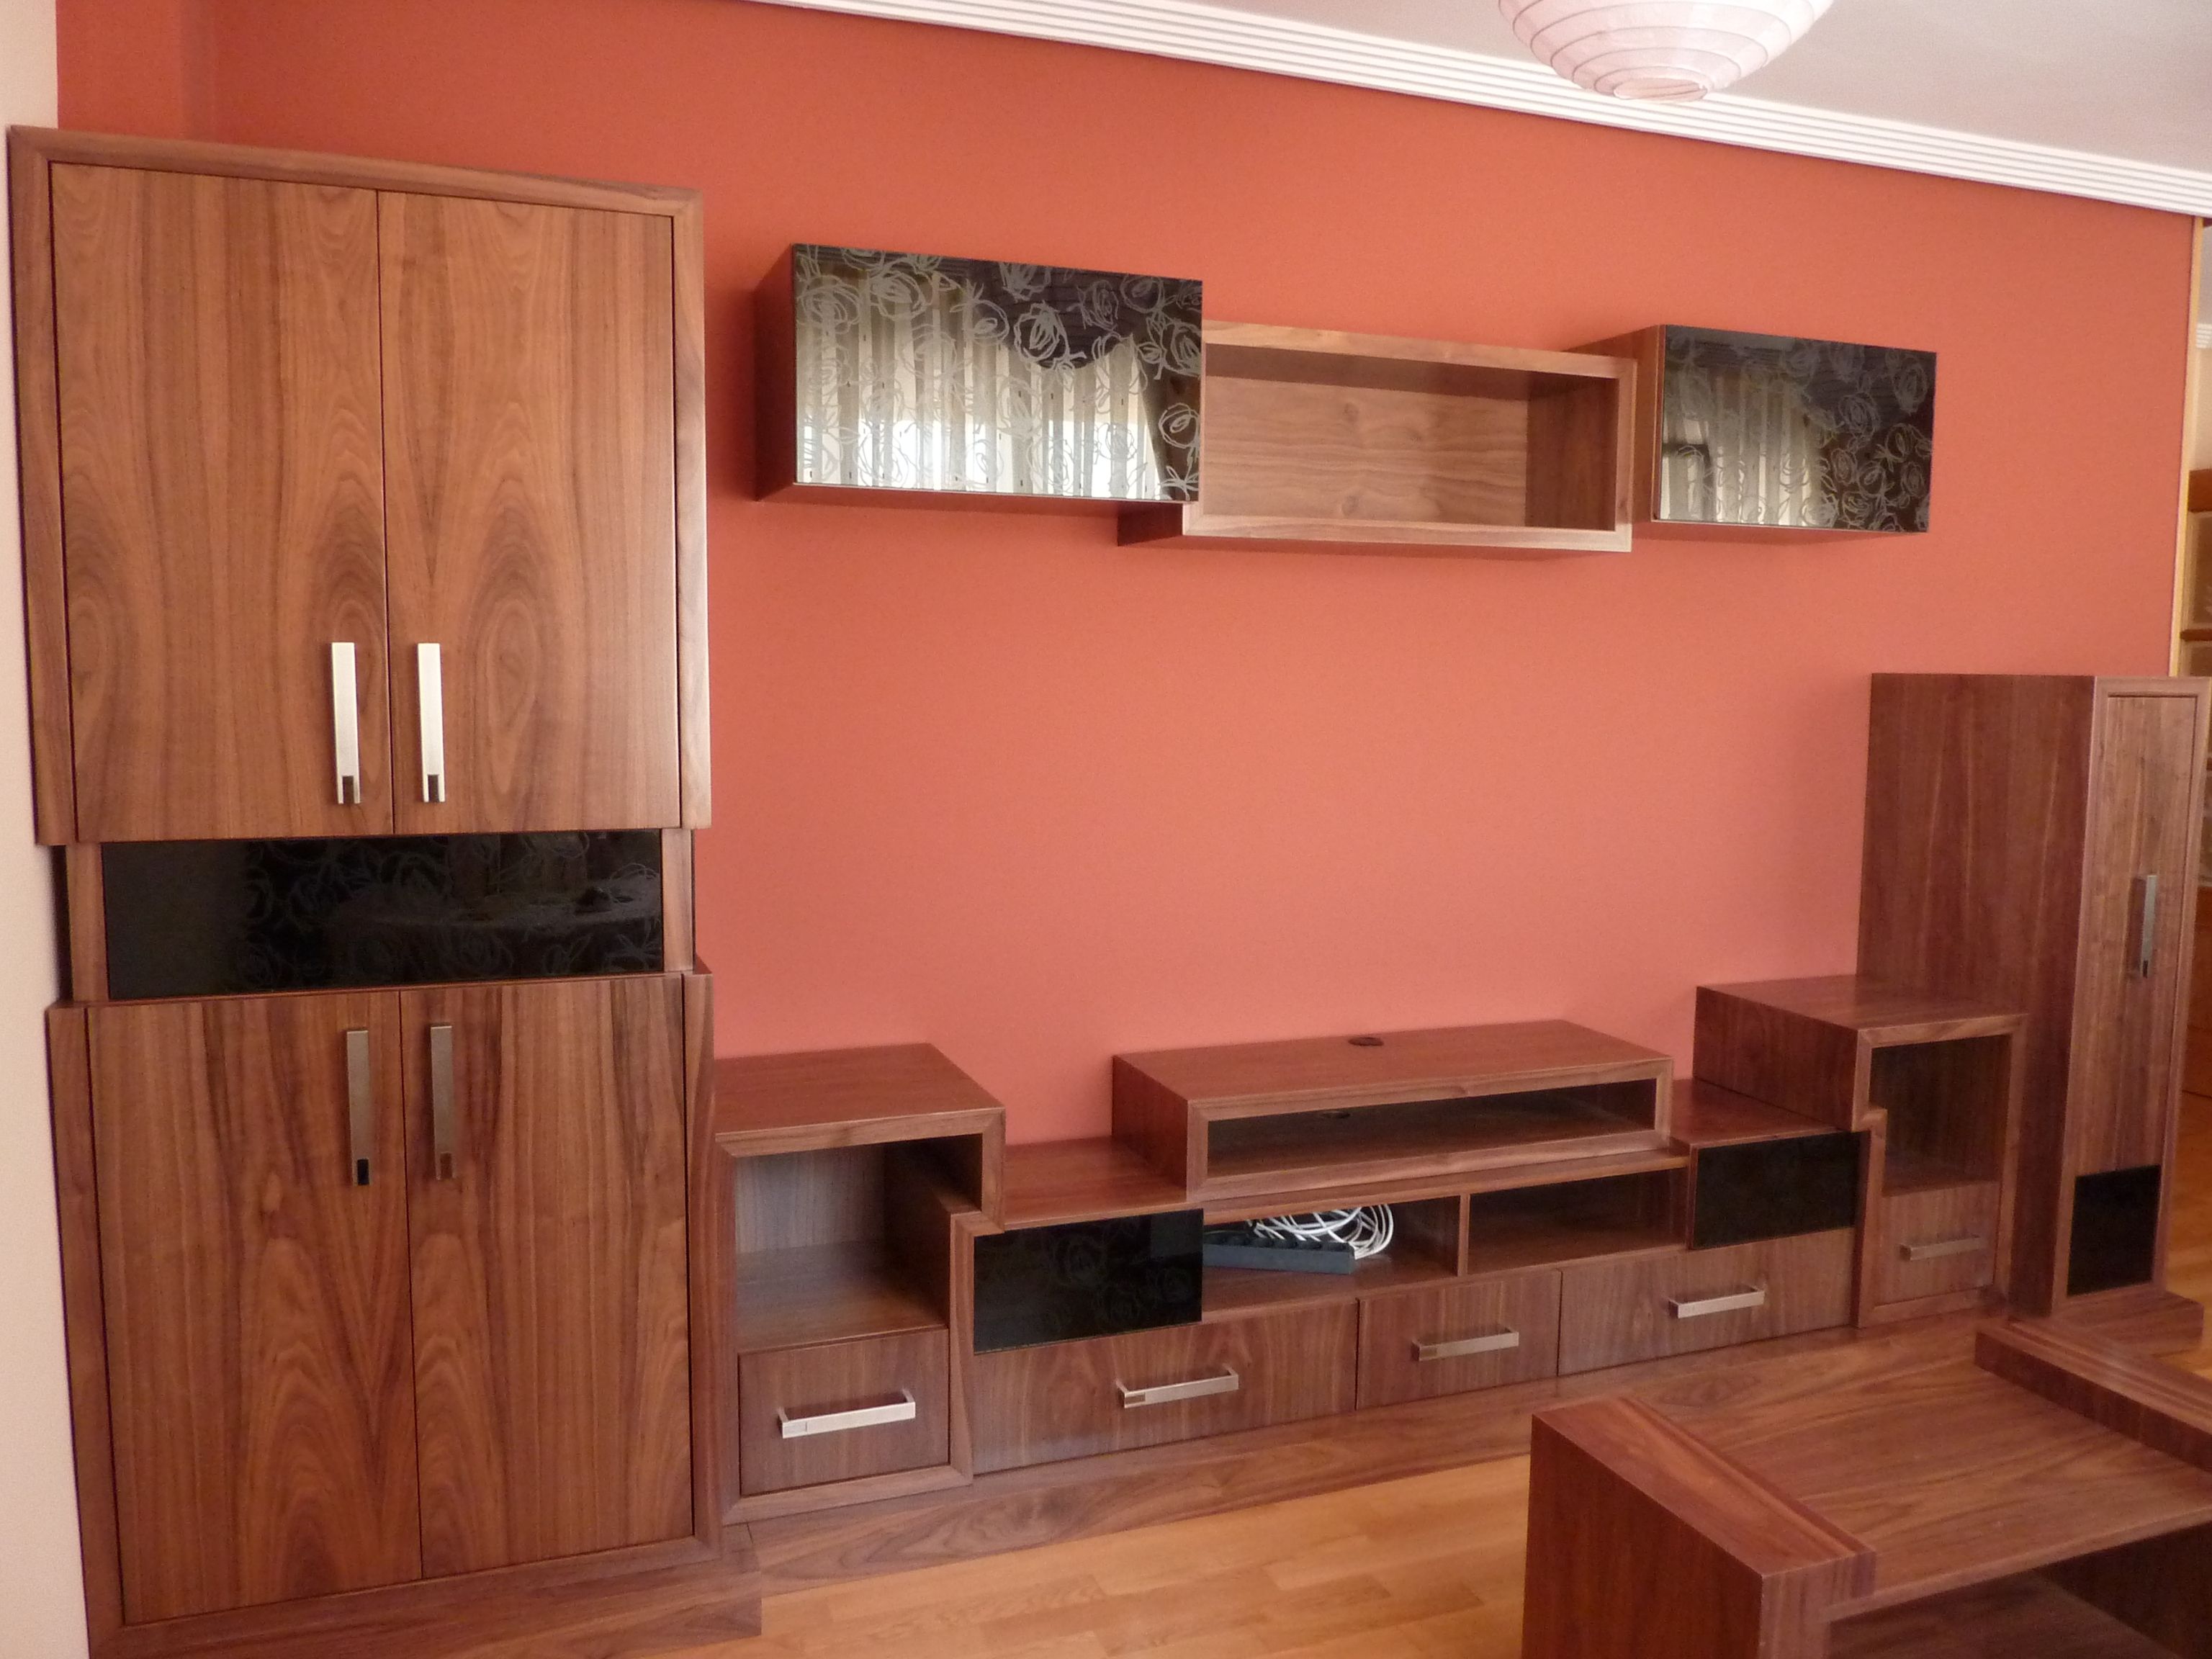 Fabricación e instalación de muebles a medida en Asturias